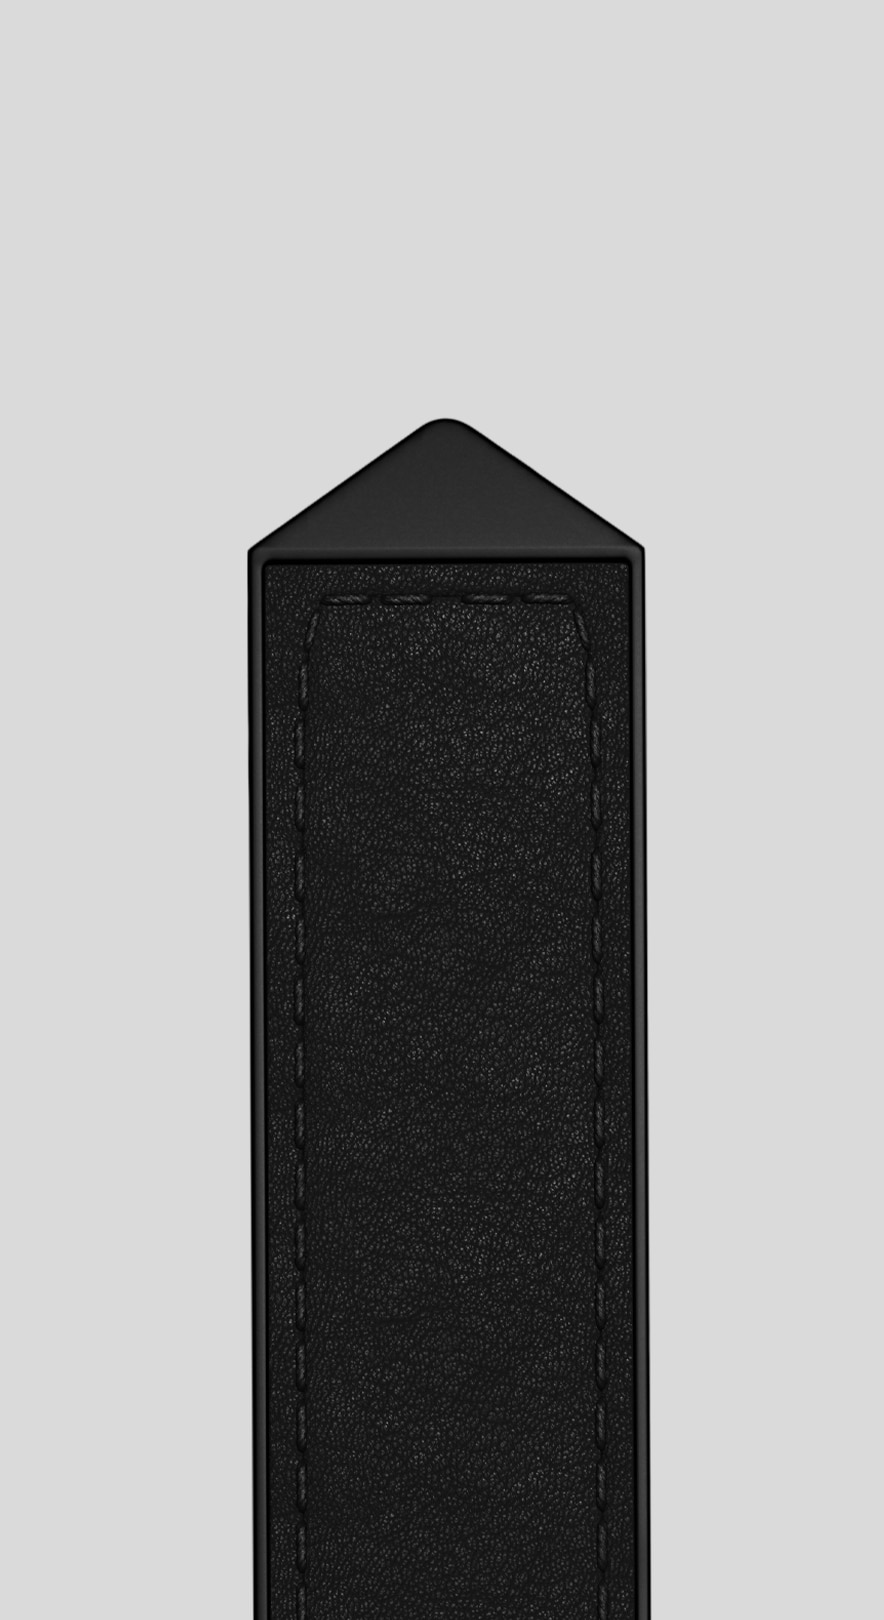 Brown Bi-material Leather Strap Calibre E4 45 mm Accessory - BT6270